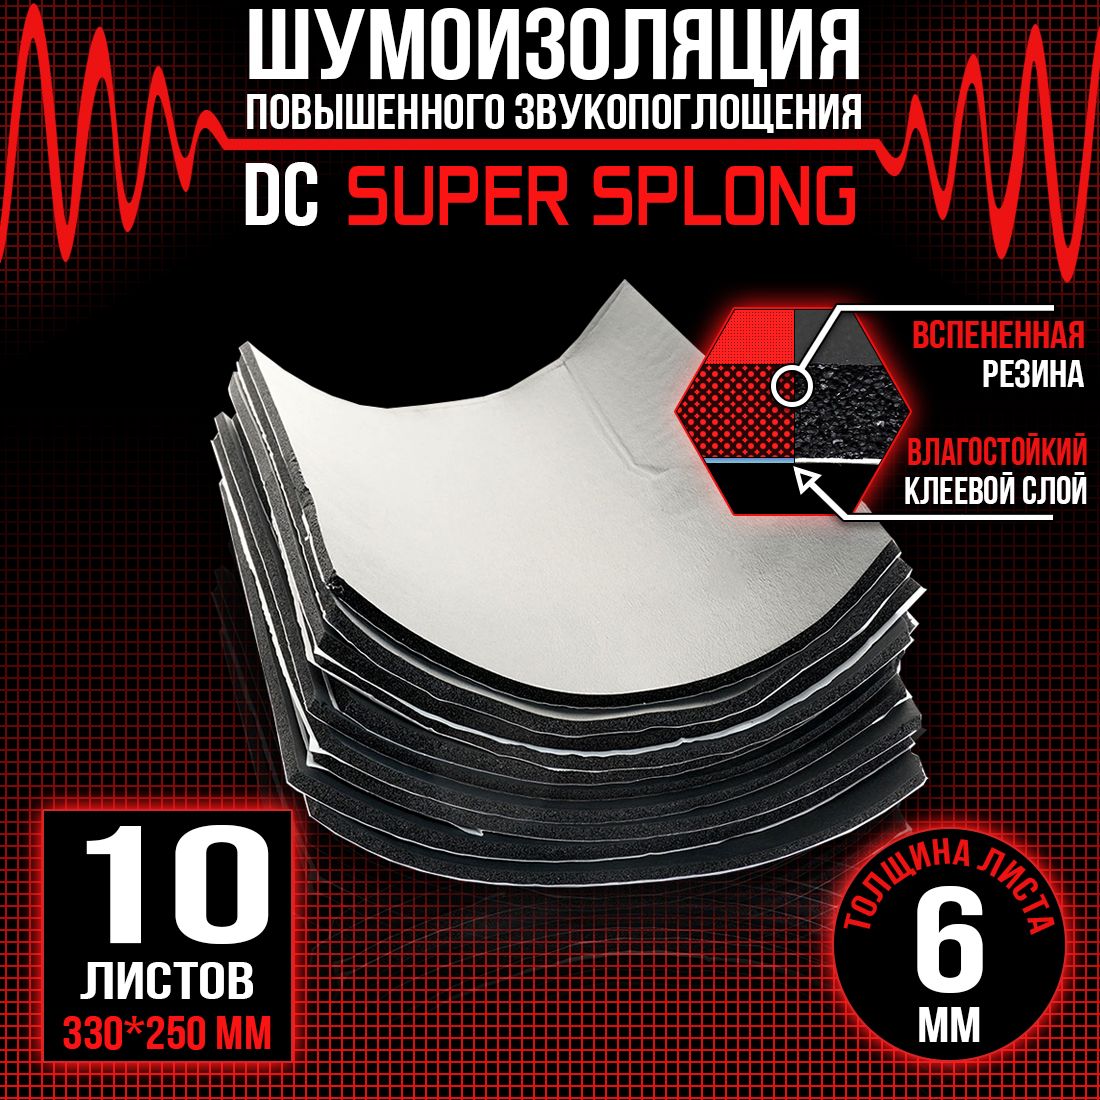 10 листов - Звукоизоляция с повышенным звукопоглощением DreamCar Super Splong 6мм 33х25см - 10 листов